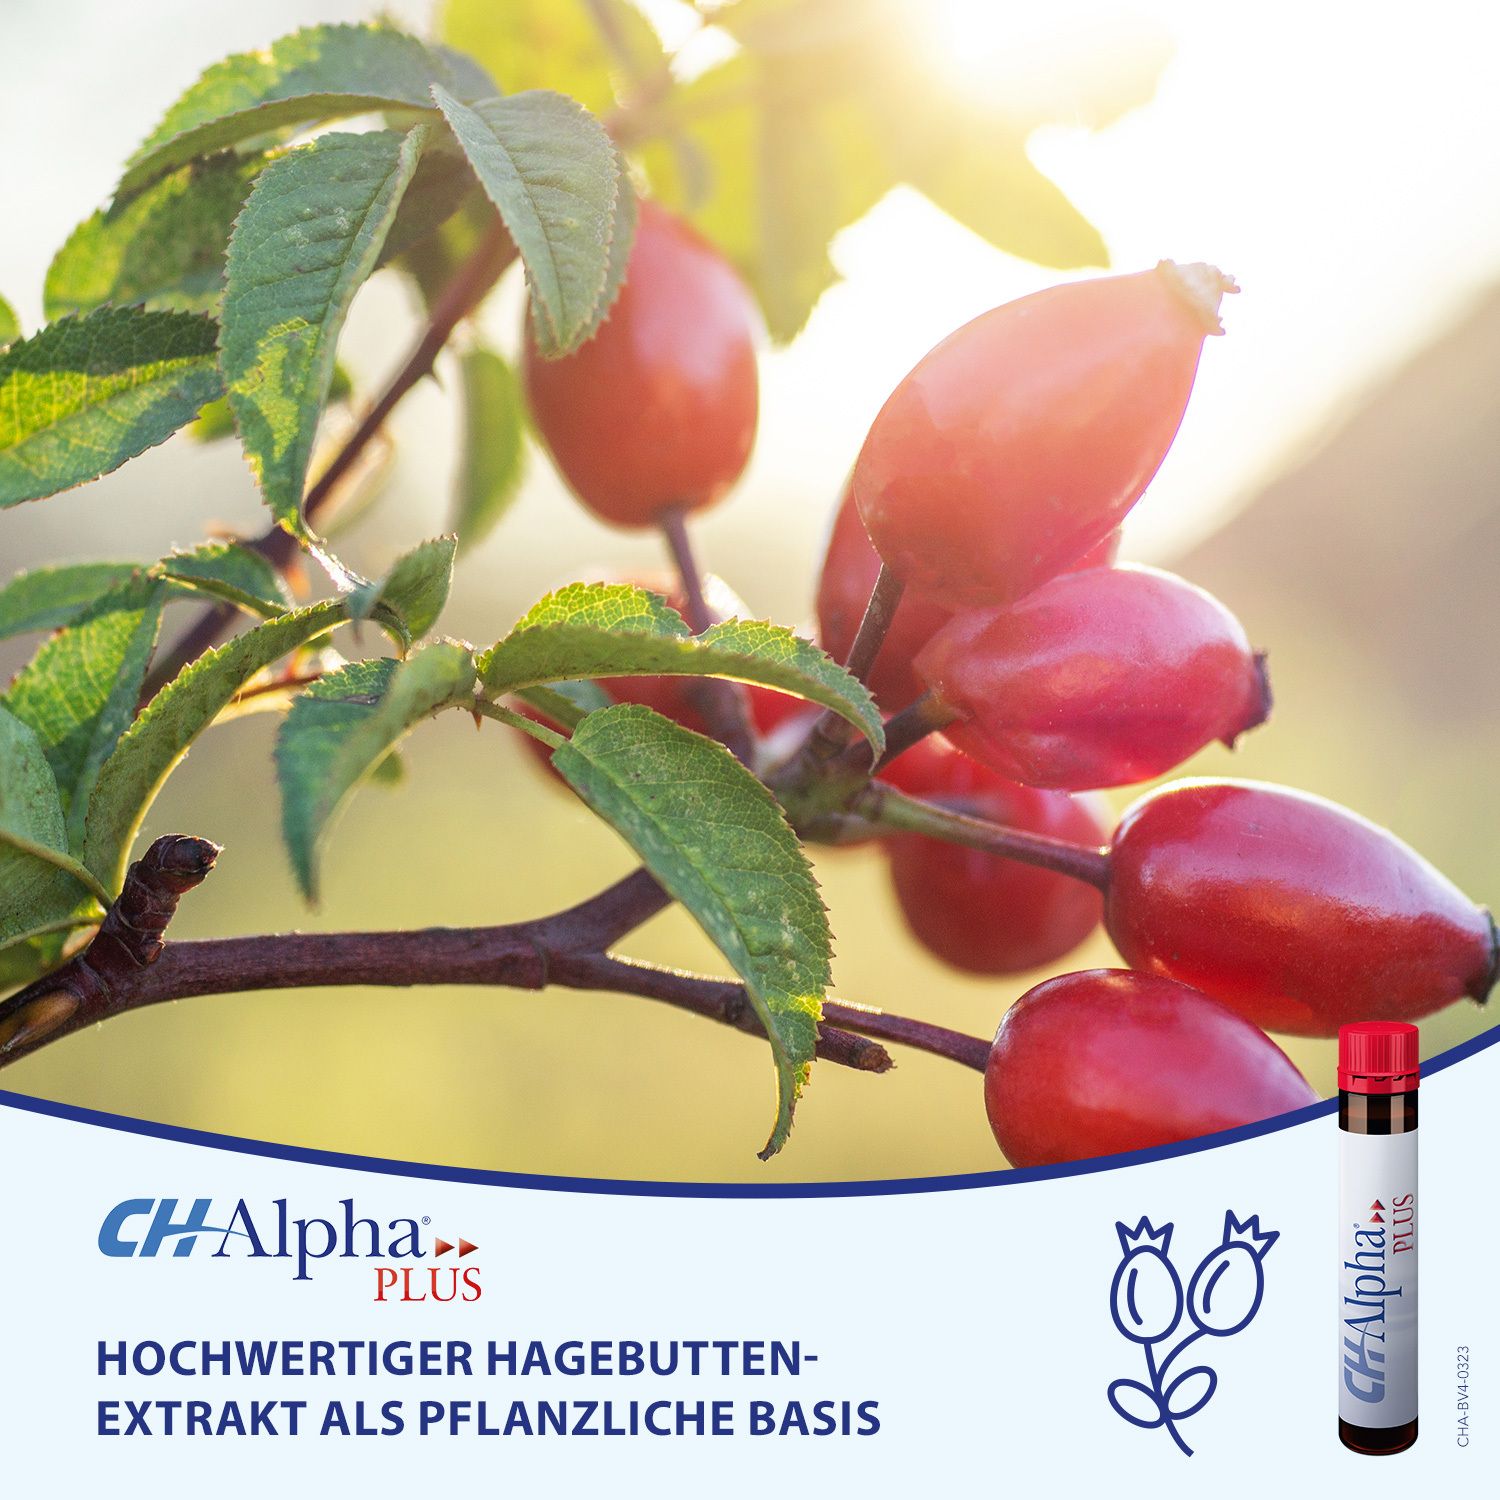 CH-Alpha PLUS Gelenk Kollagen Trinkampullen für gesunde Gelenke und Knorpel mit Hagebuttenextrakt und Vitamin C